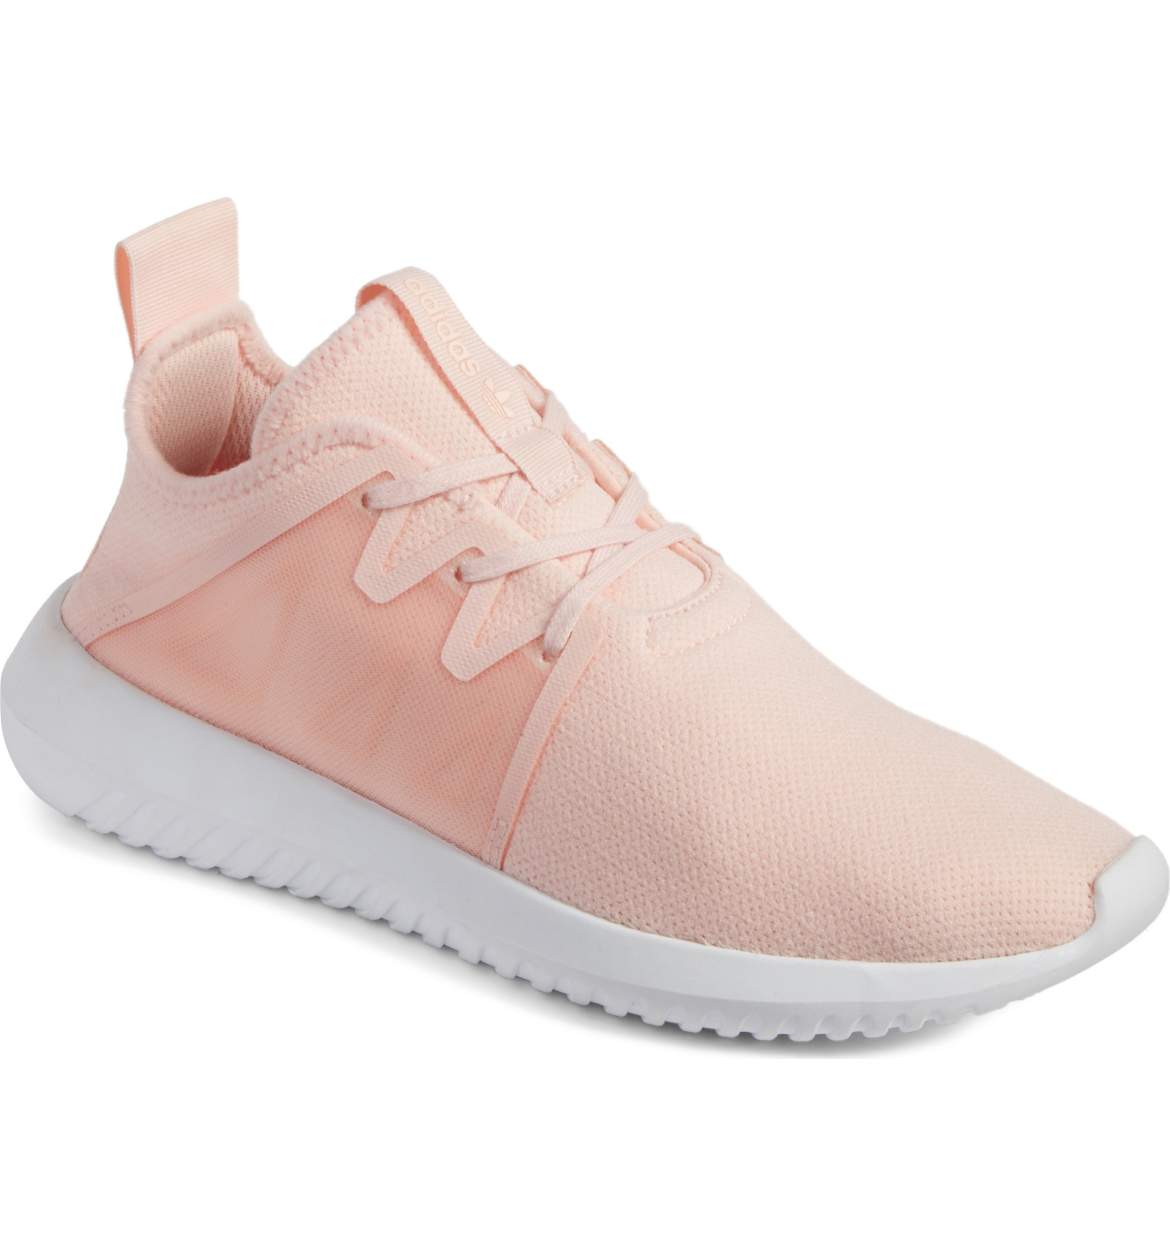 adidas shoe pink.jpg